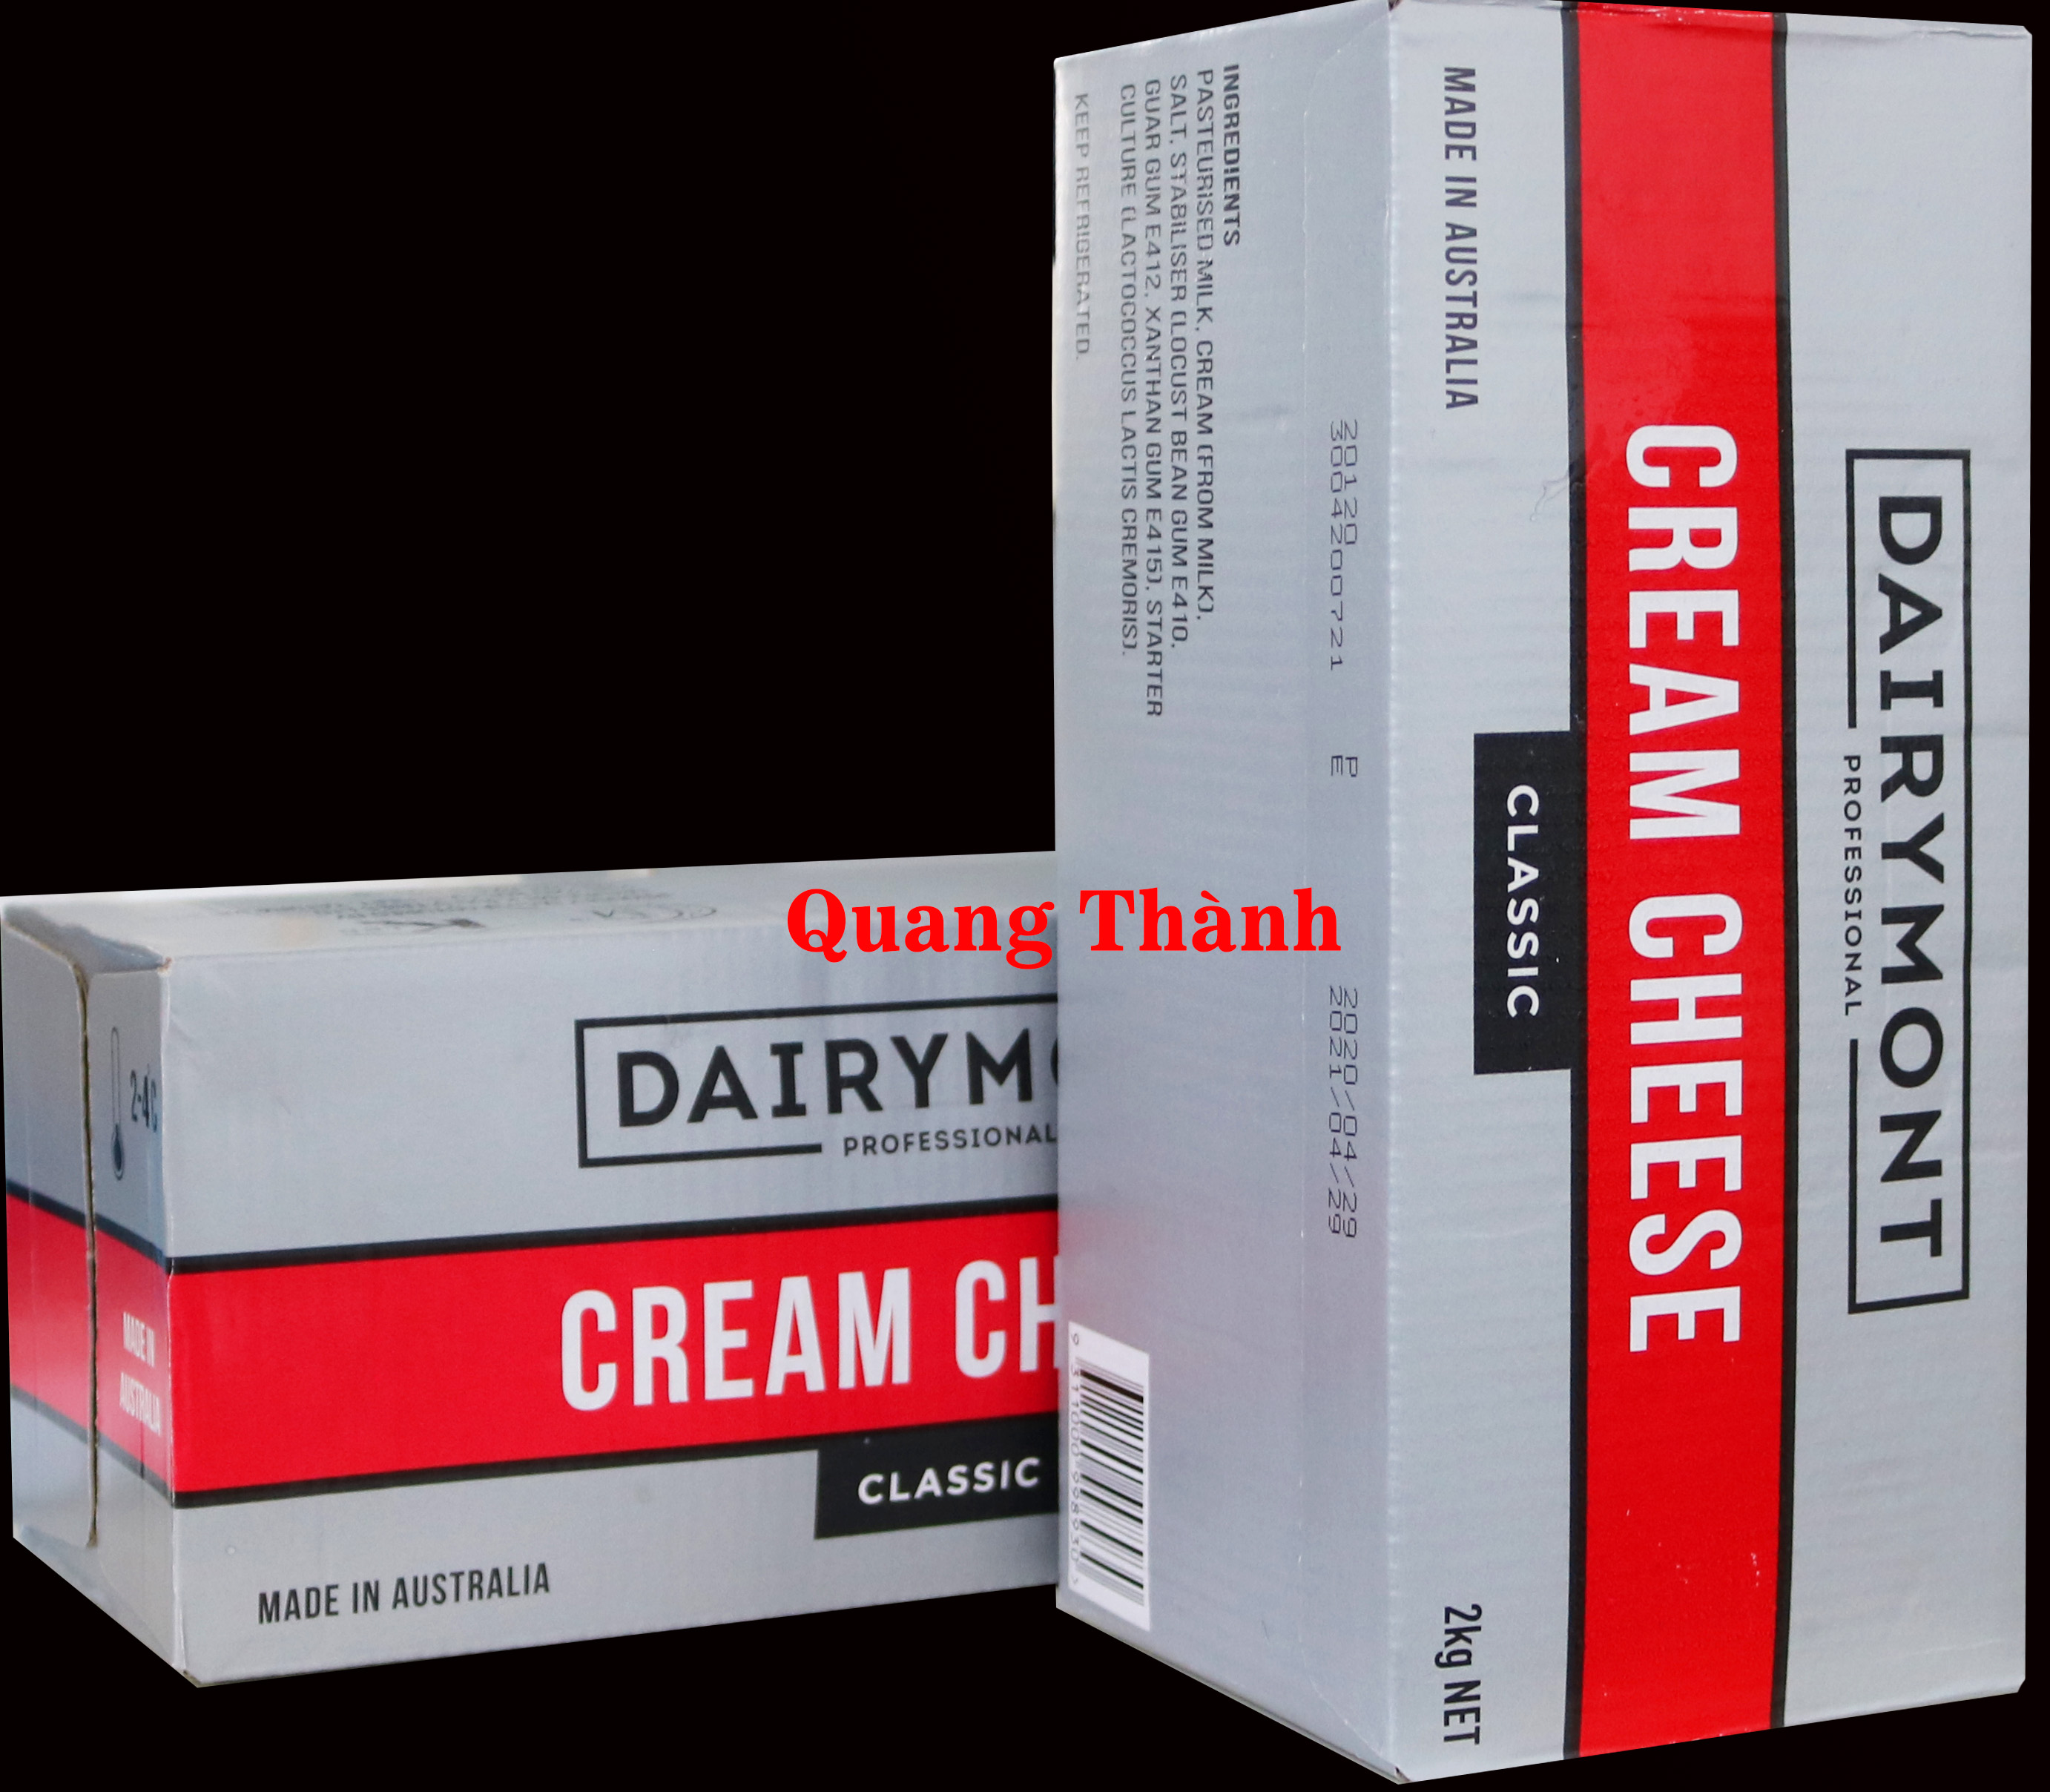 Creamcheese dairy Mont